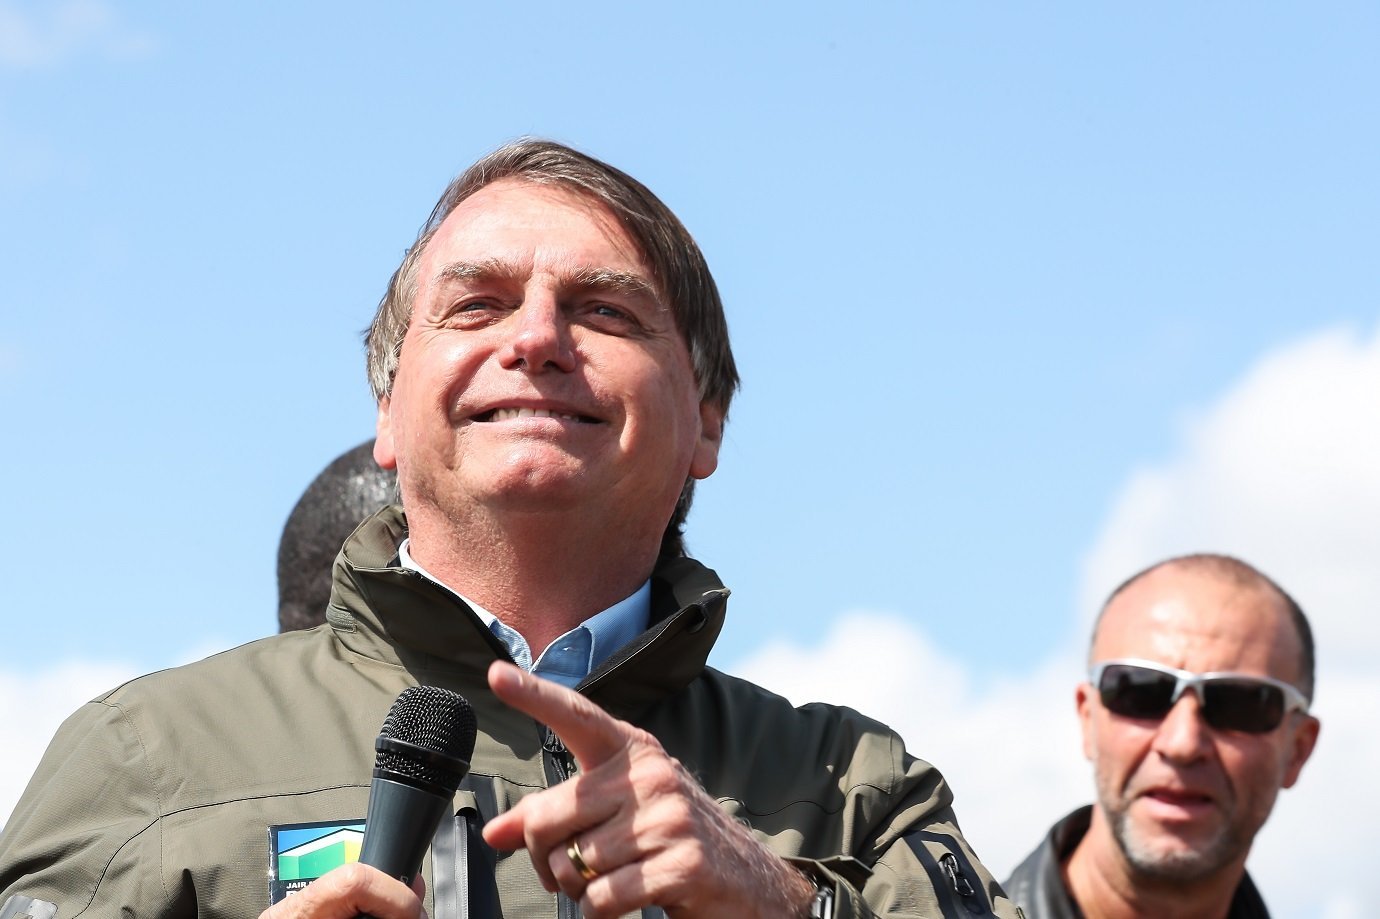 Presidente Jair Bolsonaro durante passeio de moto pelas ruas de Brasília.